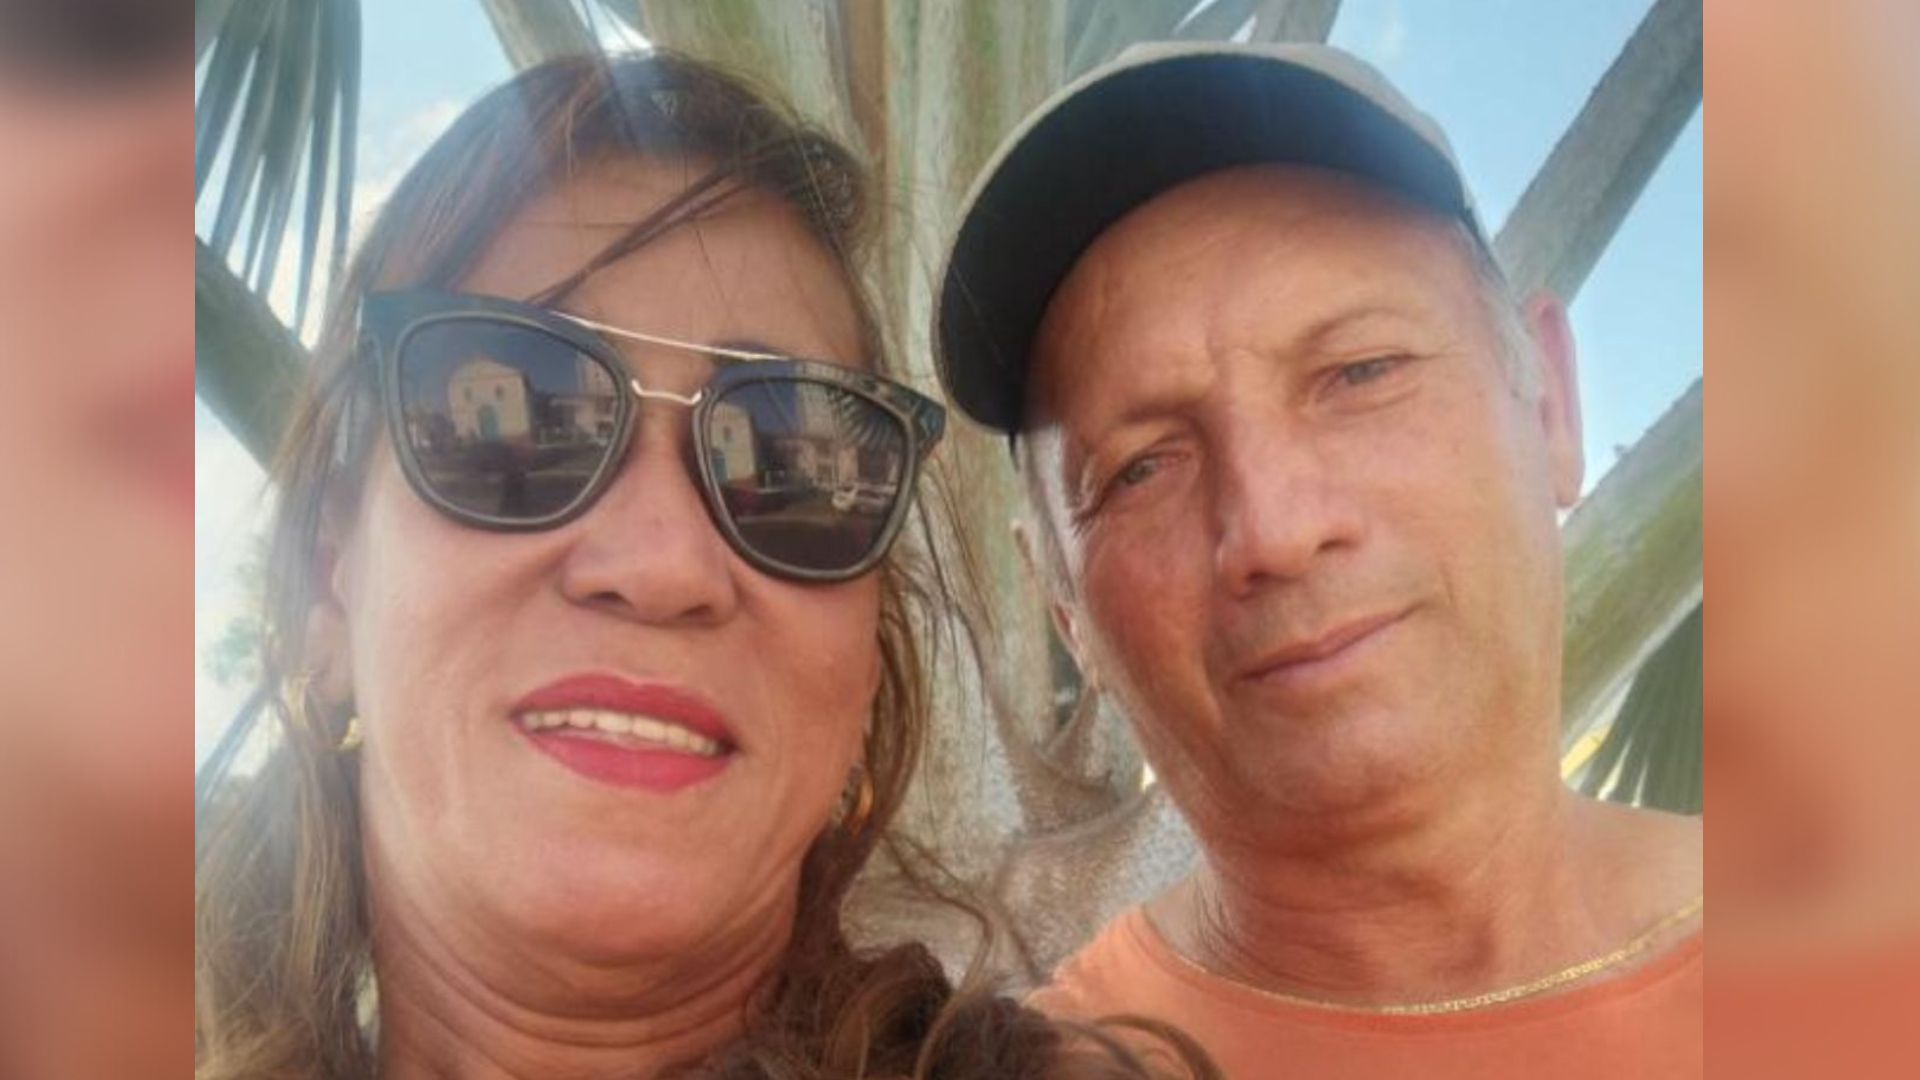 Gerson Bispo dos Santos, de 55 anos, e Luciana Batista Pires, de 51, foram encontrados sem vida no interior da casa onde moravam, no dia 25 de dezembro